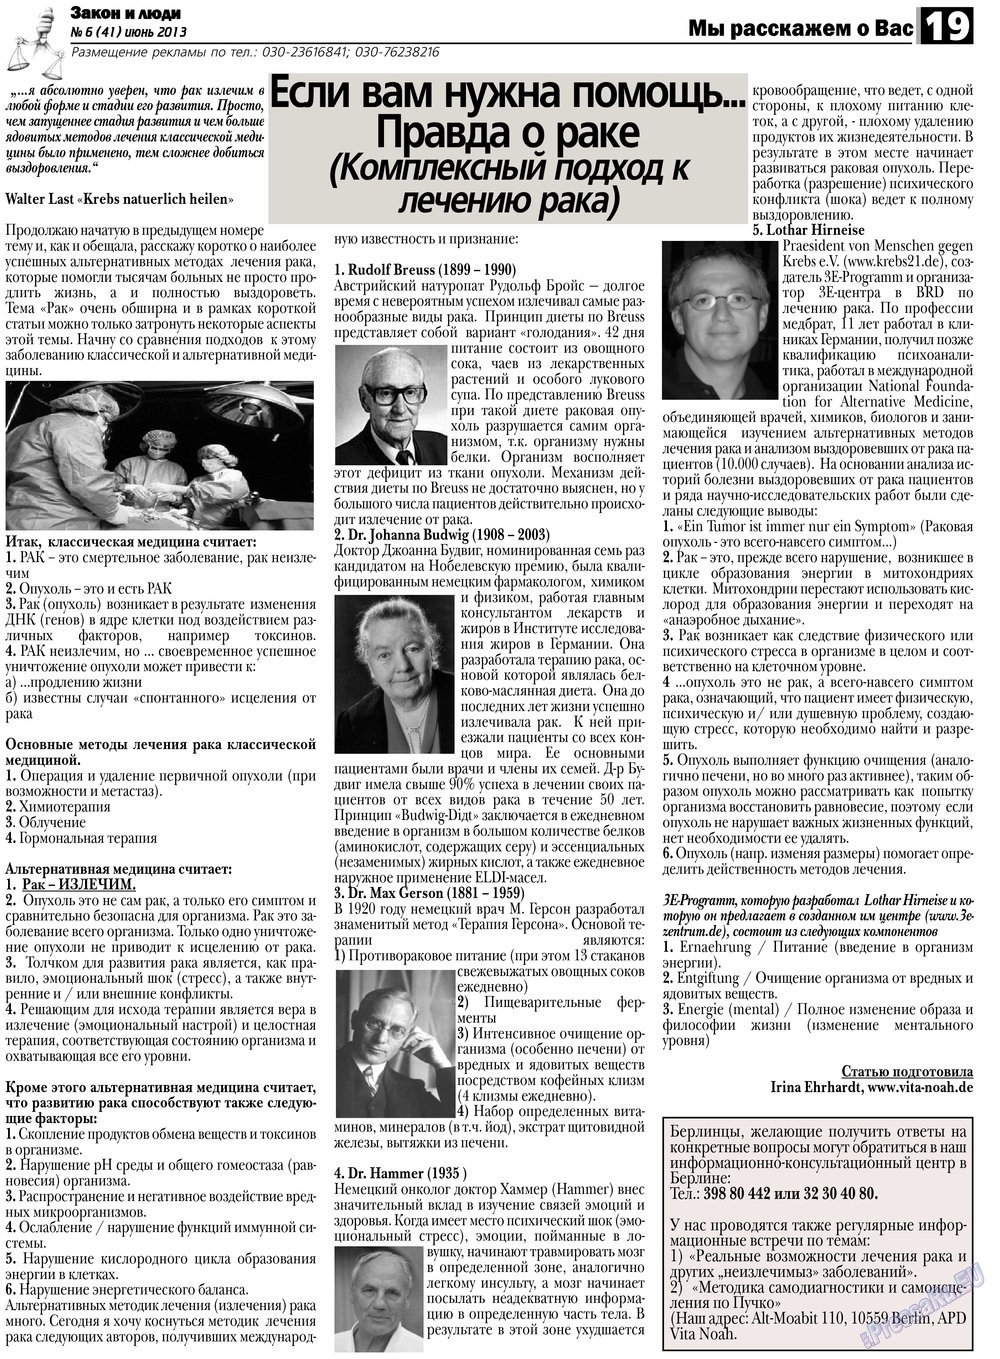 Закон и люди (газета). 2013 год, номер 6, стр. 19